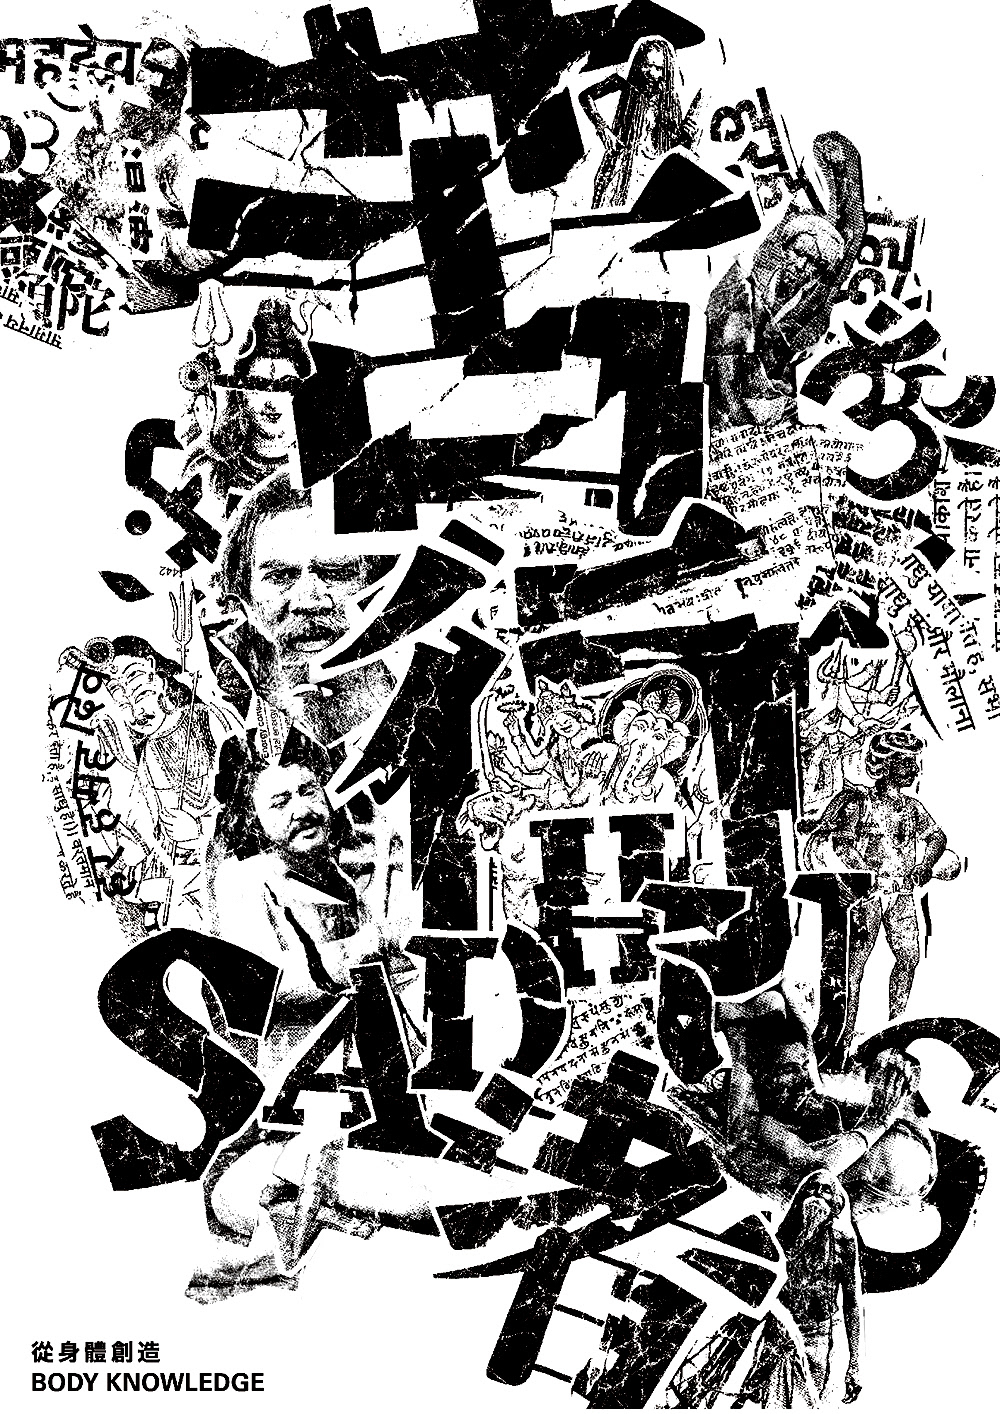 poster typographic collage  hanzi collage 文字拼貼 漢字 typography collage type collage typecollage collage 漢字拼貼